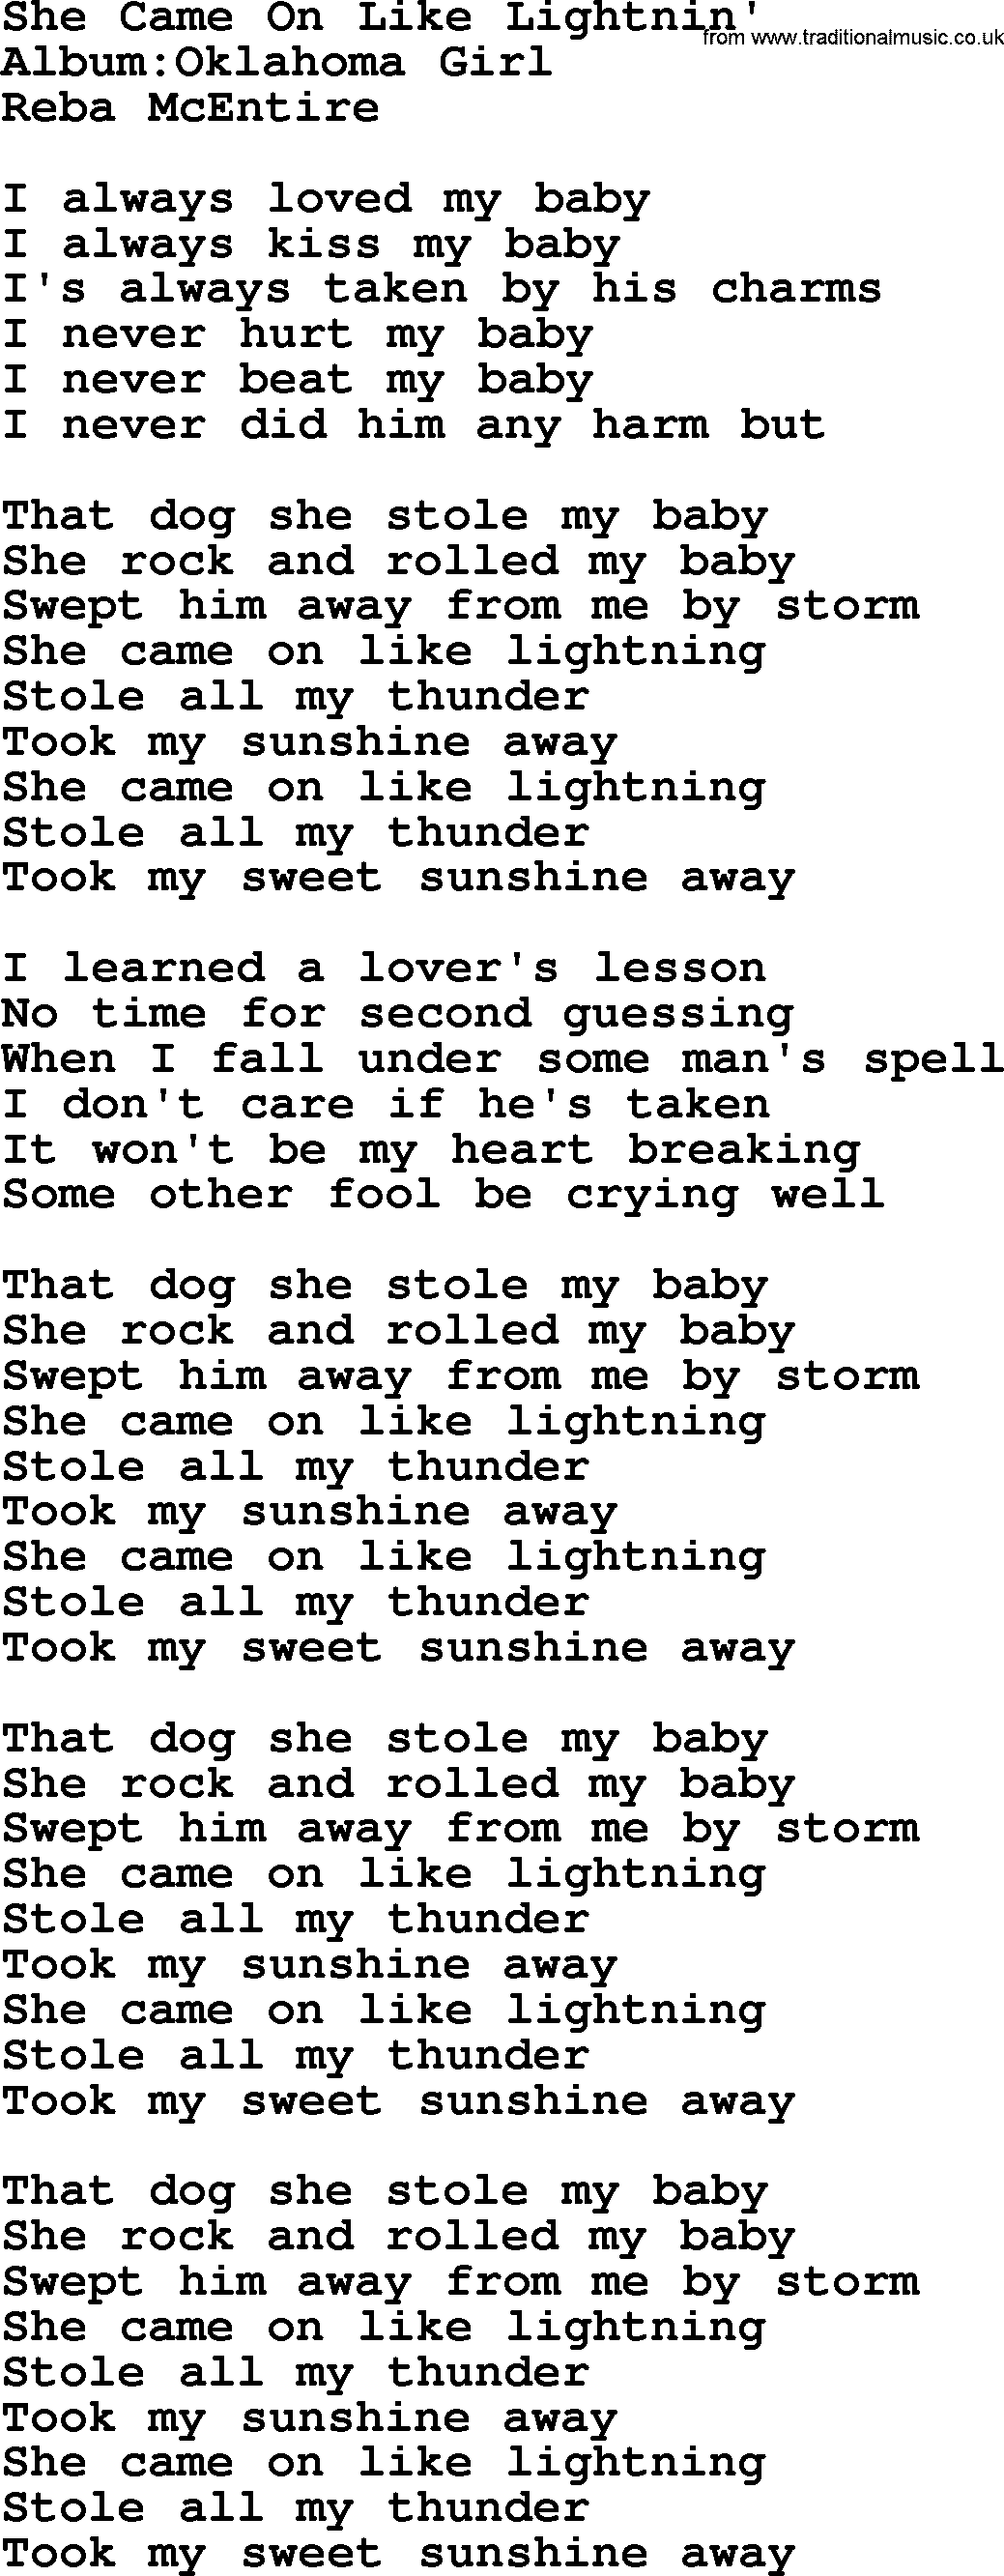 Reba McEntire song: She Came On Like Lightnin' lyrics